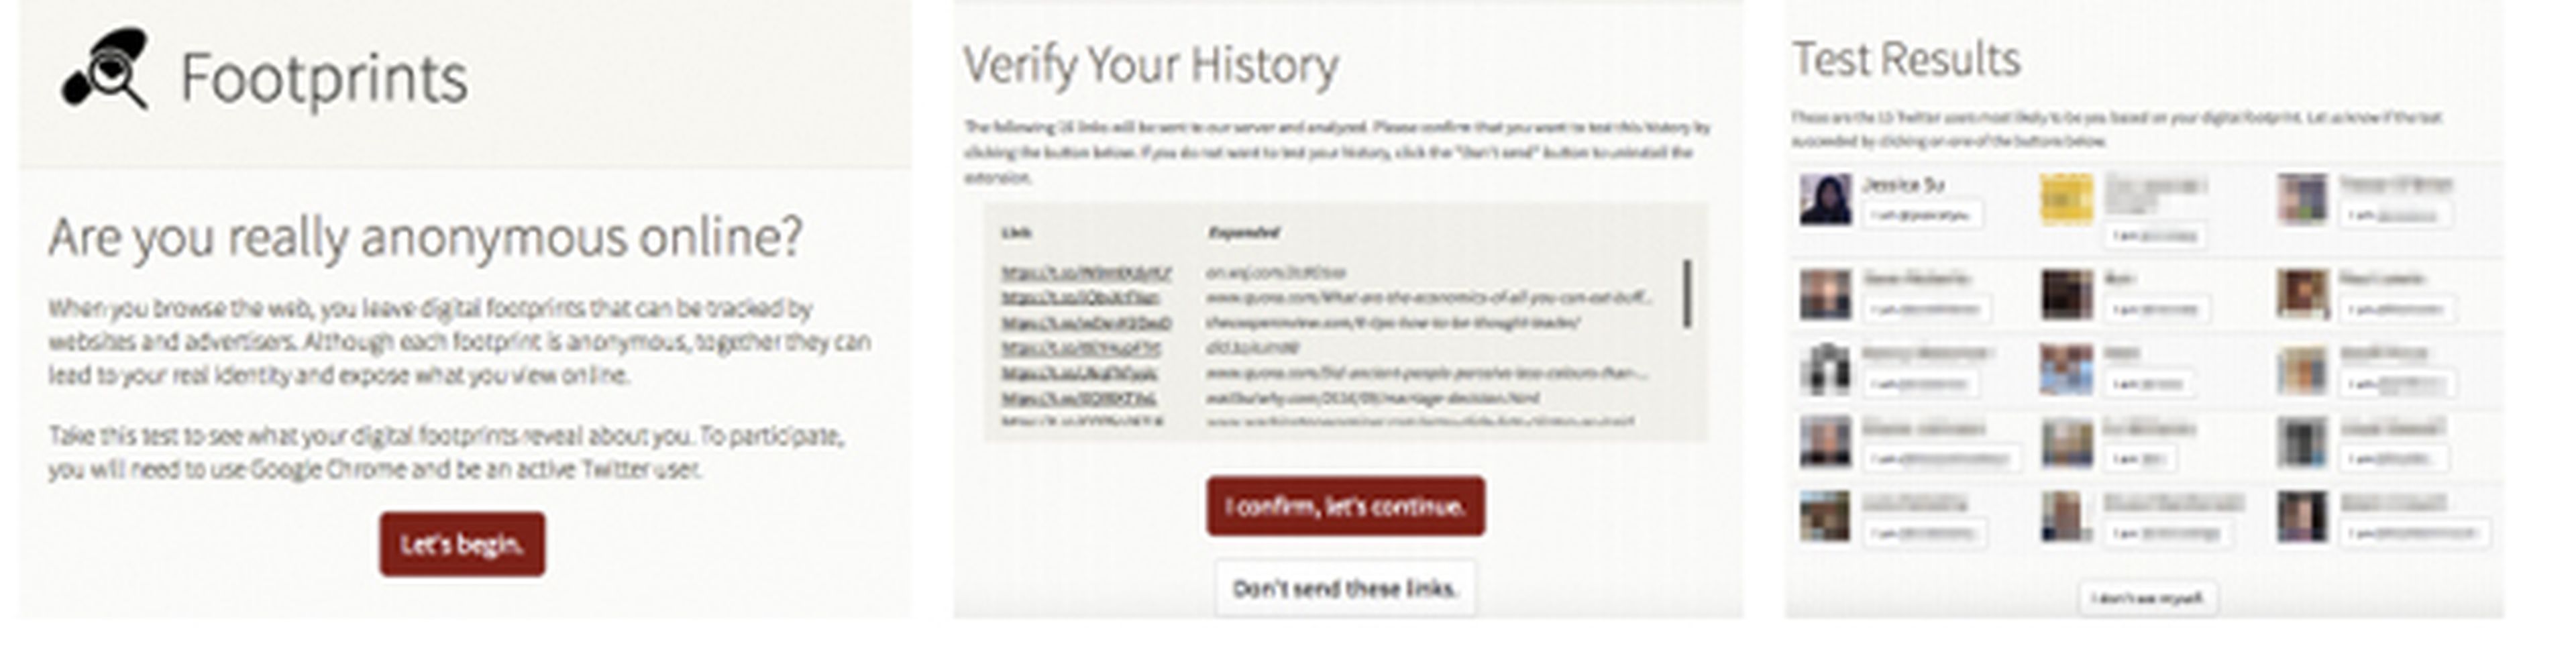 Así era la página del experimento que revelaba la identidad de un usuario en base a su historial